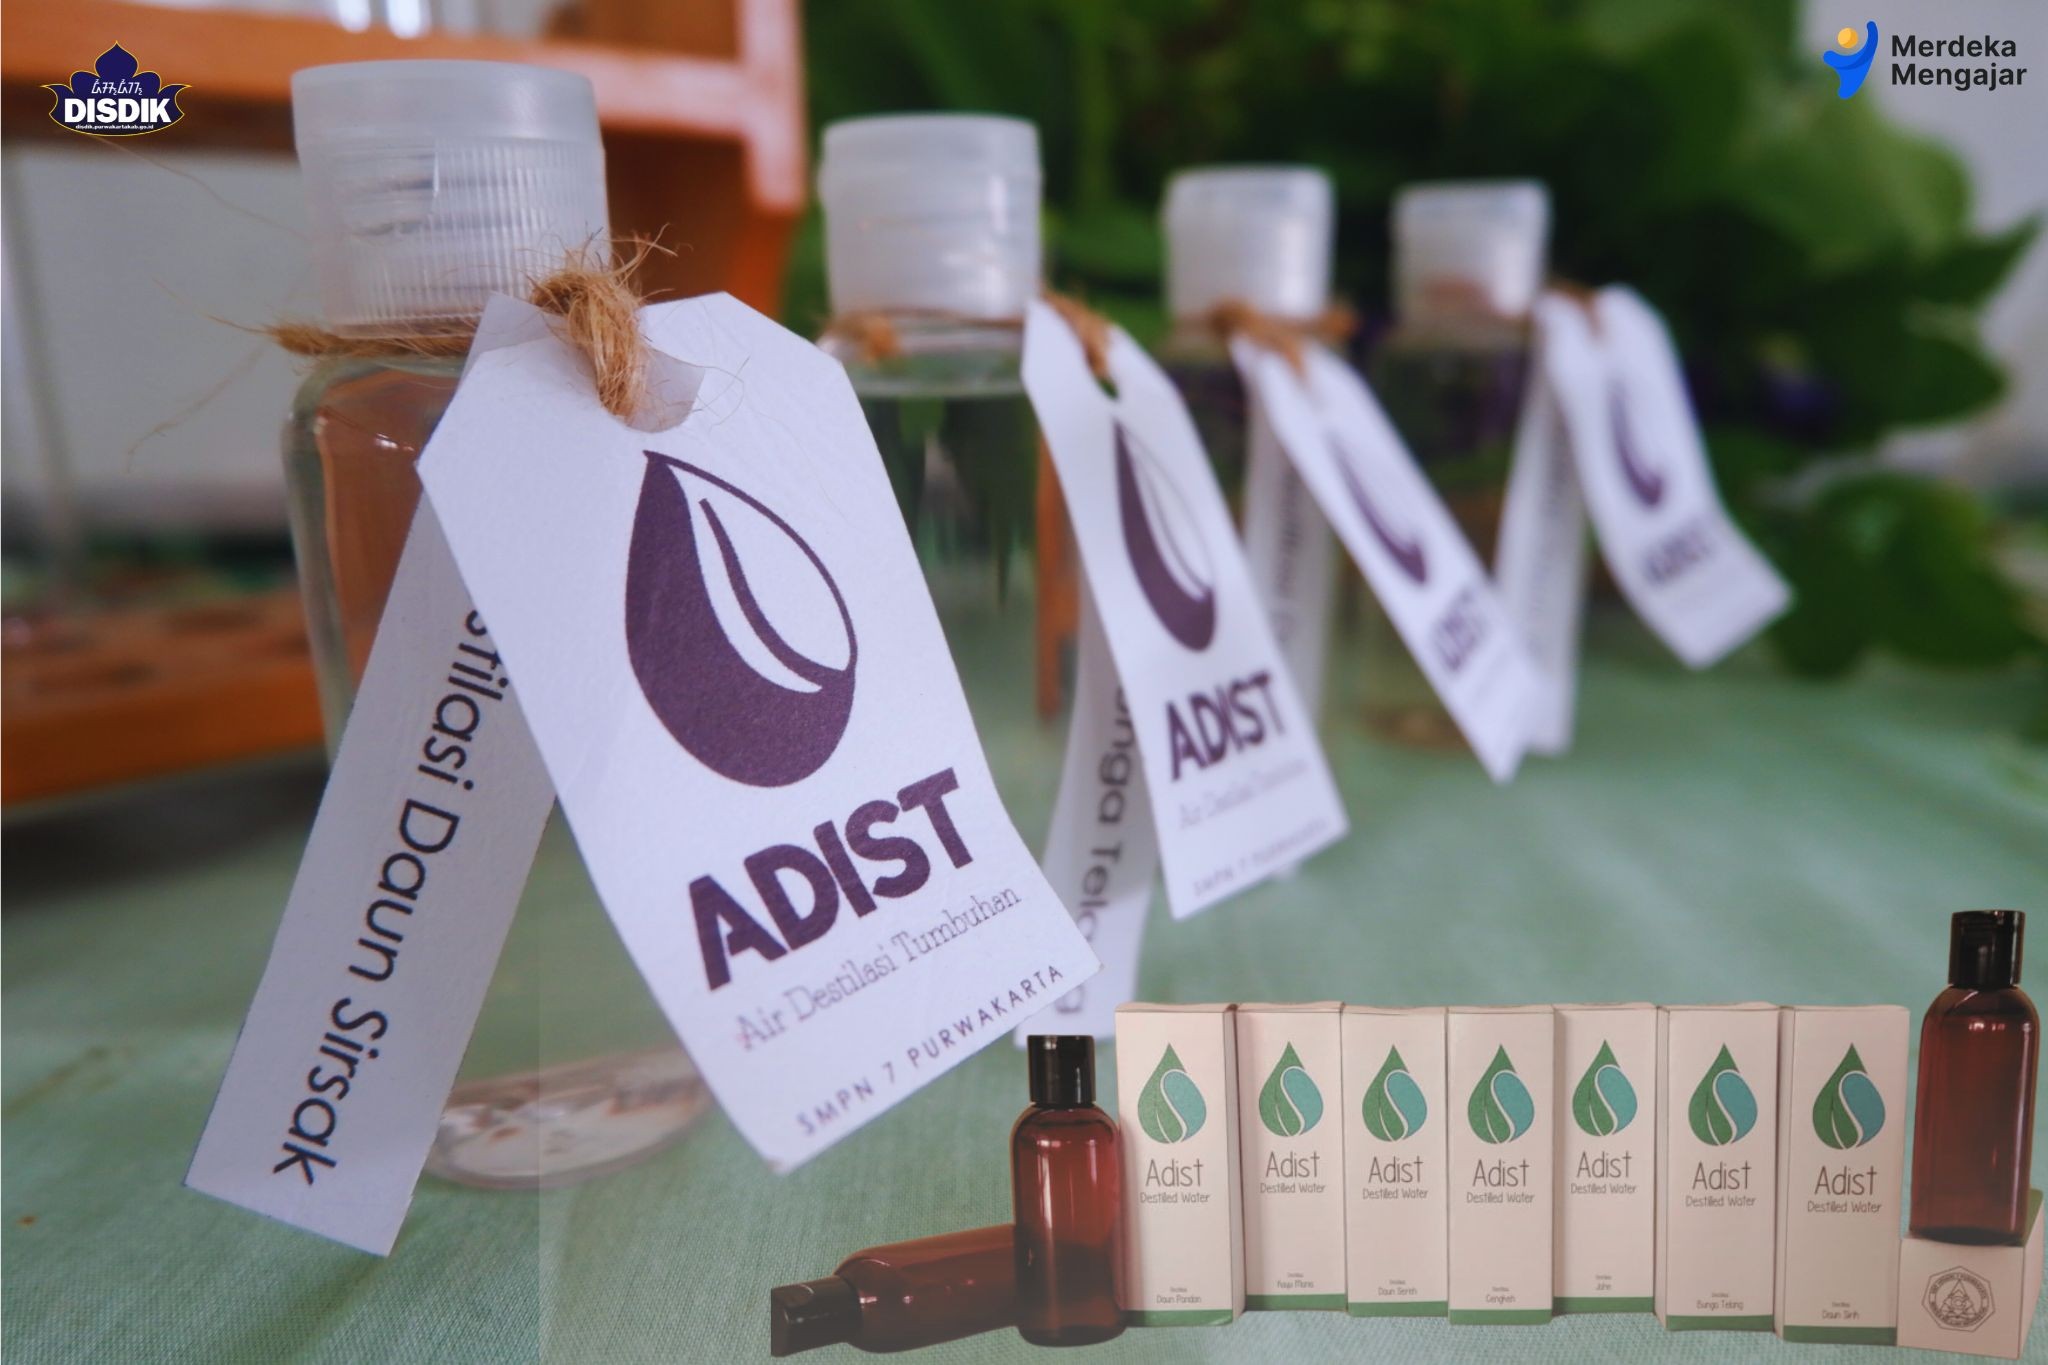 Air Distilasi, Inovasi Pengolahan Tanaman Obat Karya Siswa SMPN 7 Purwakarta